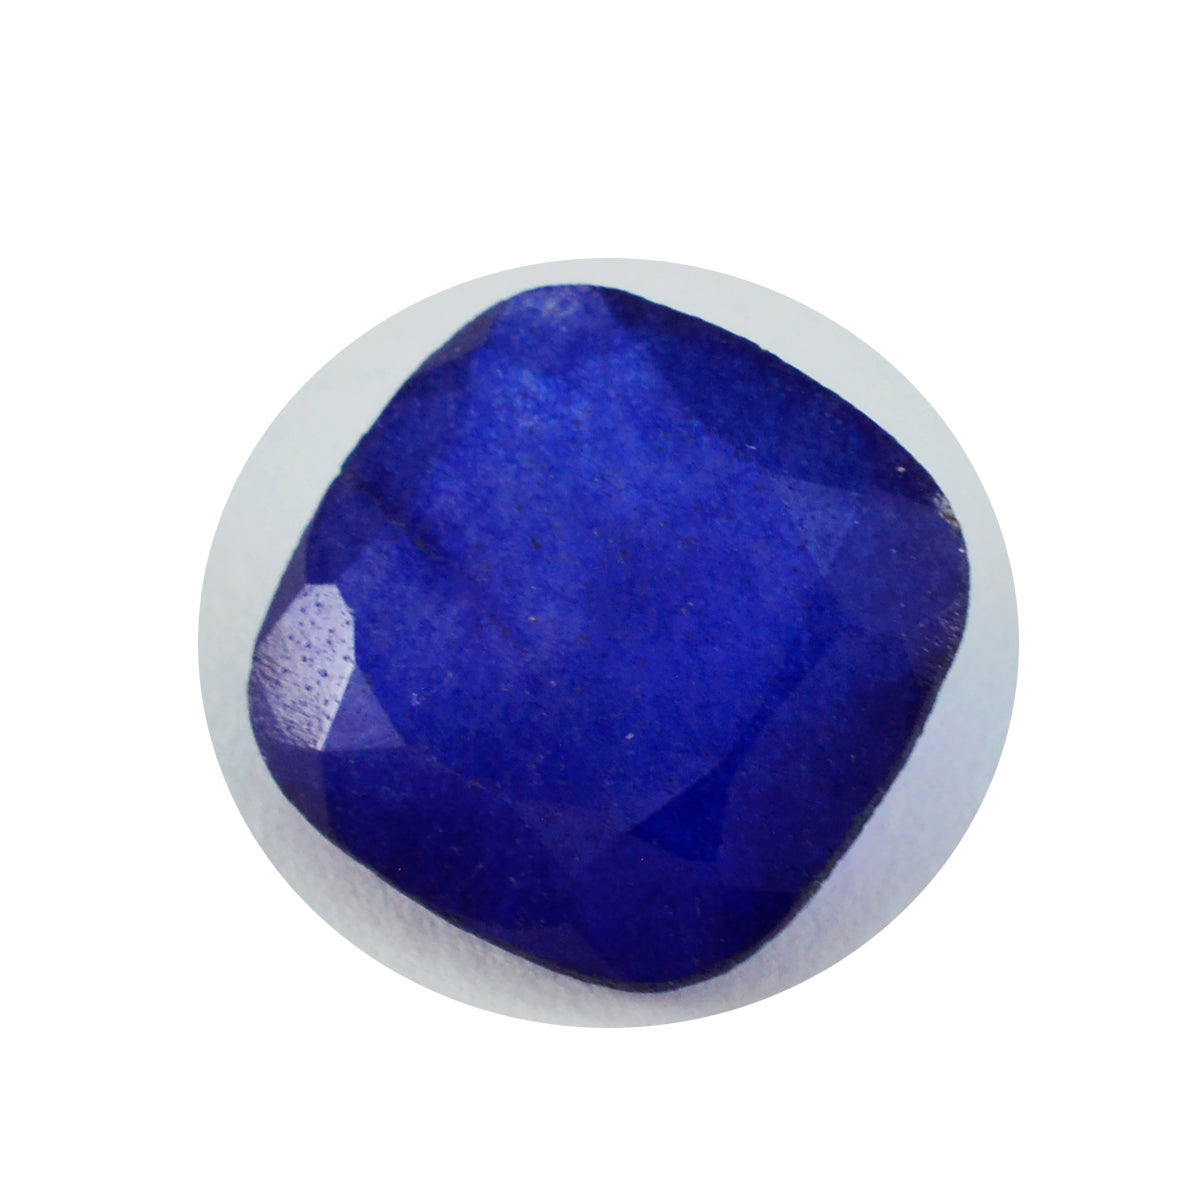 riyogems 1 шт. настоящая синяя яшма граненая 14x14 мм в форме подушки красивый качественный драгоценный камень